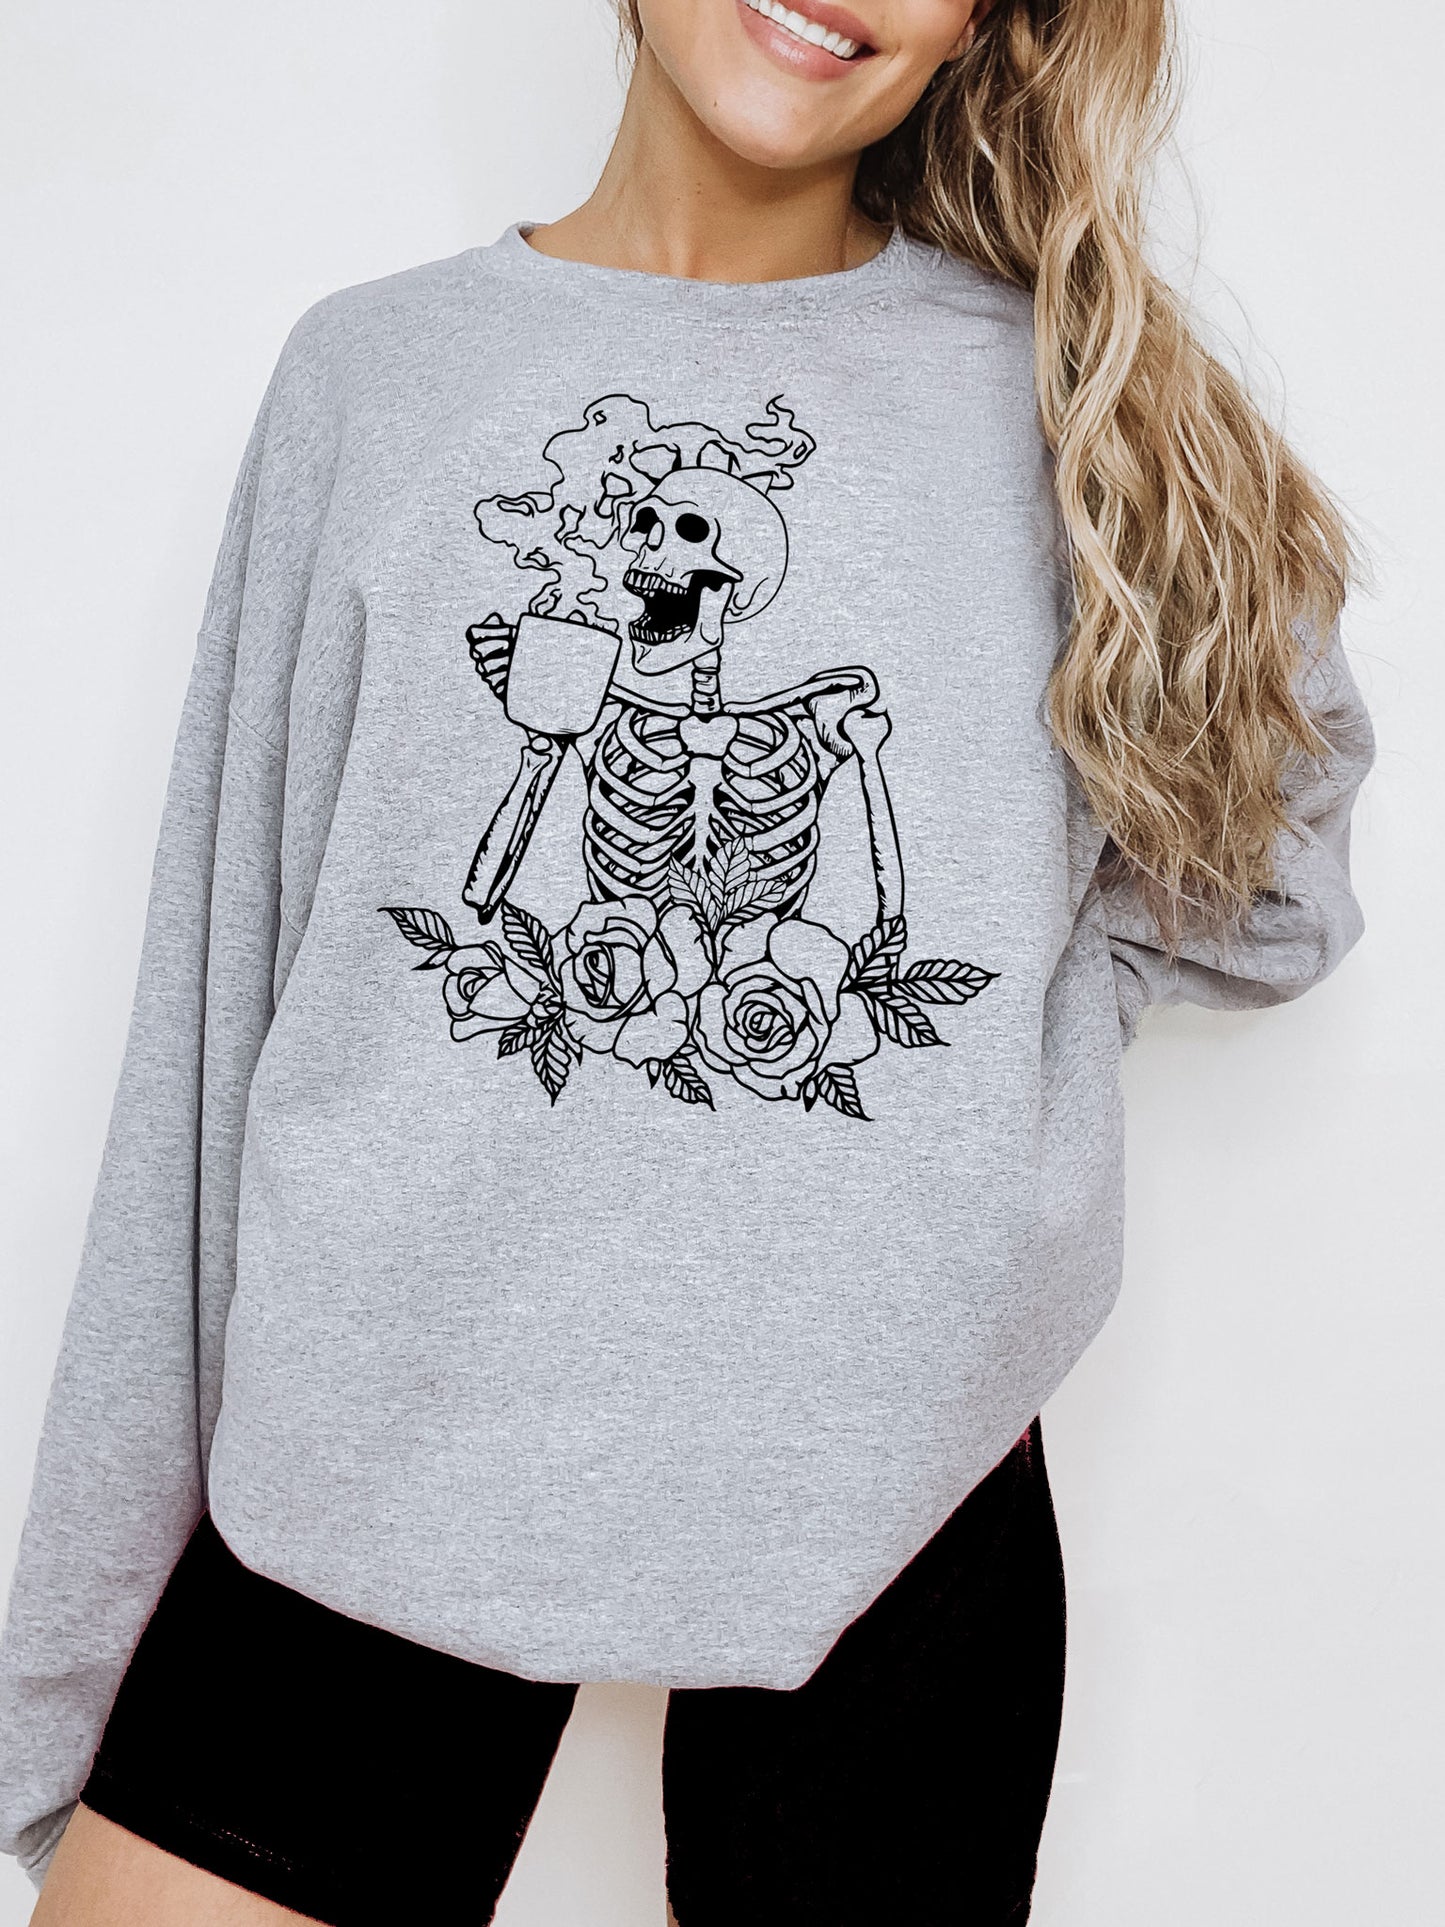 Hot Coffee Skeleton with Roses Sweatshirt - Black Ink